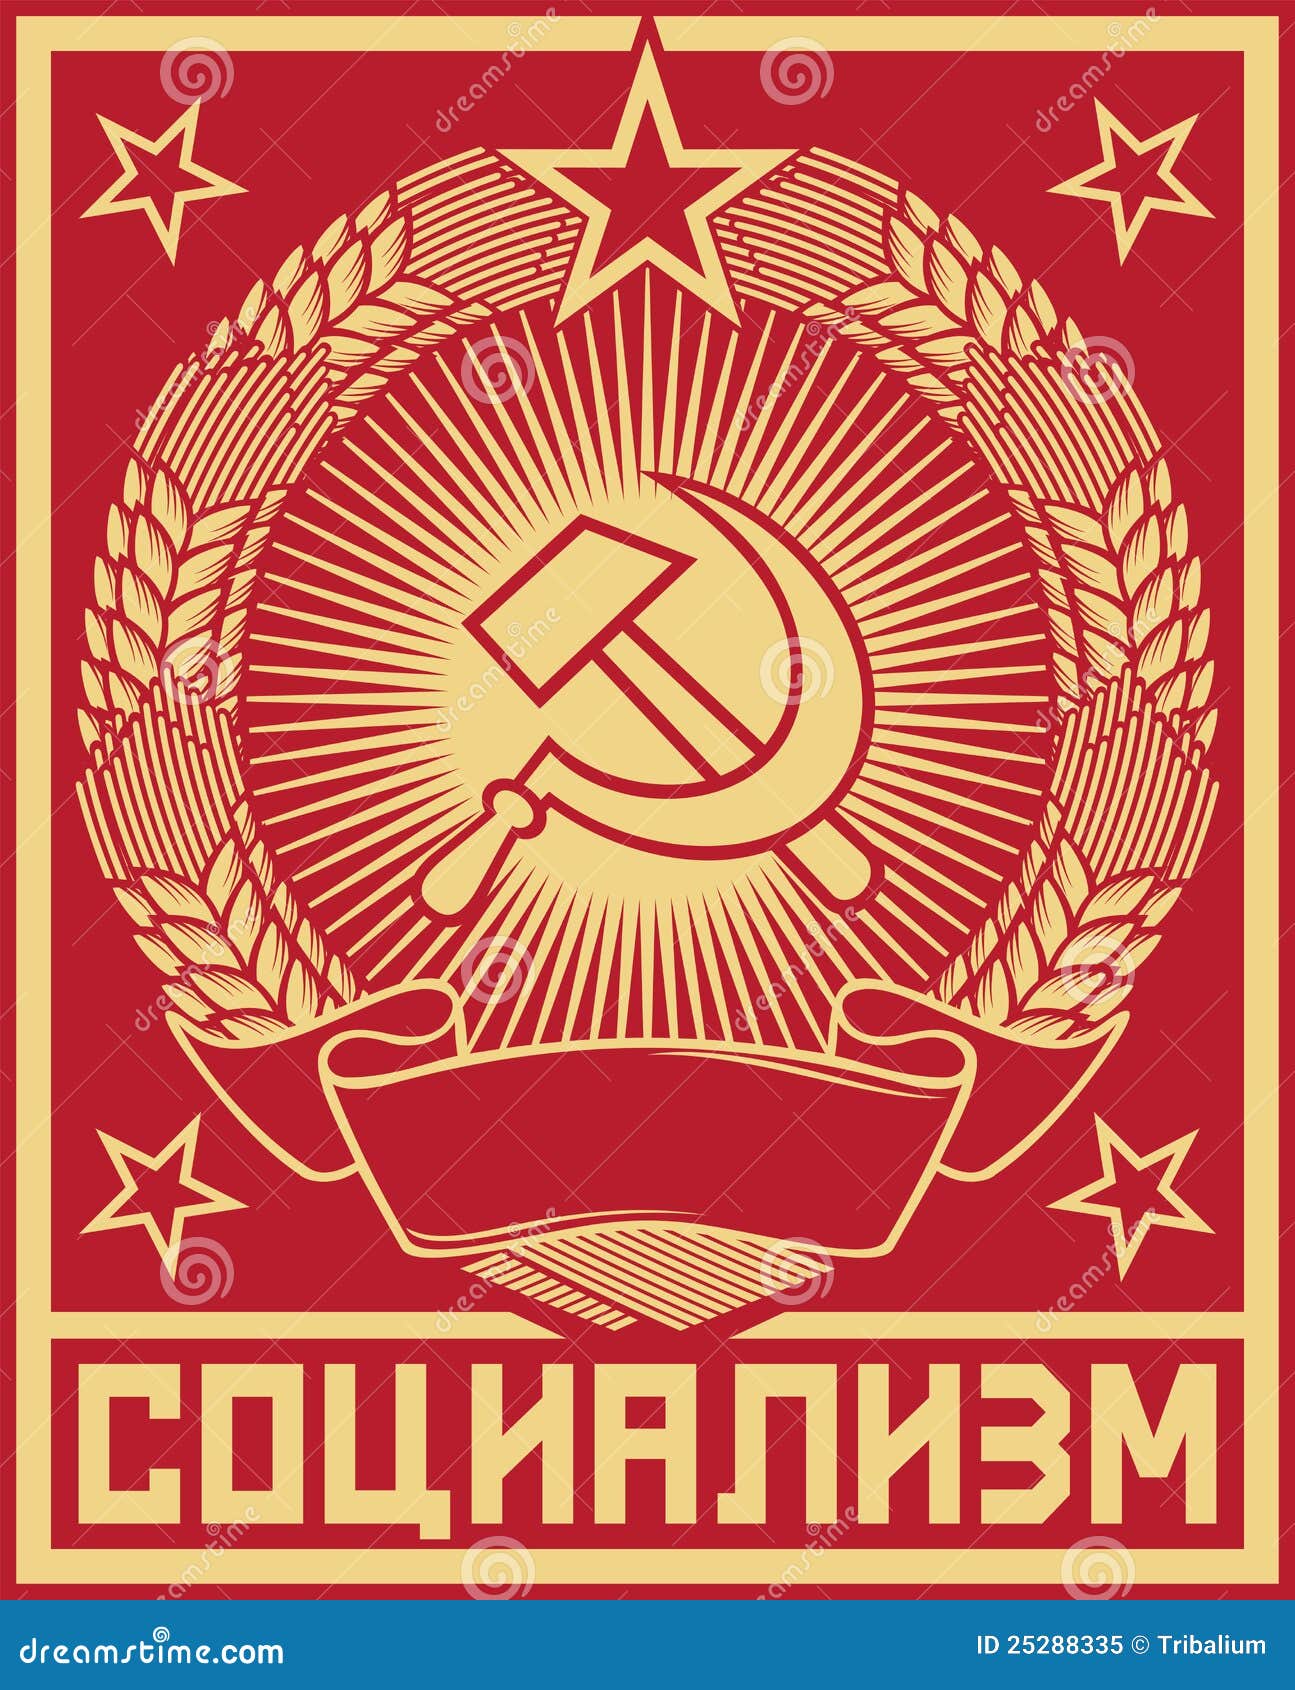 Soviet Union Slogan Socialist Republics Tattoo Stock Vector (Royalty Free)  1958178730 | Shutterstock